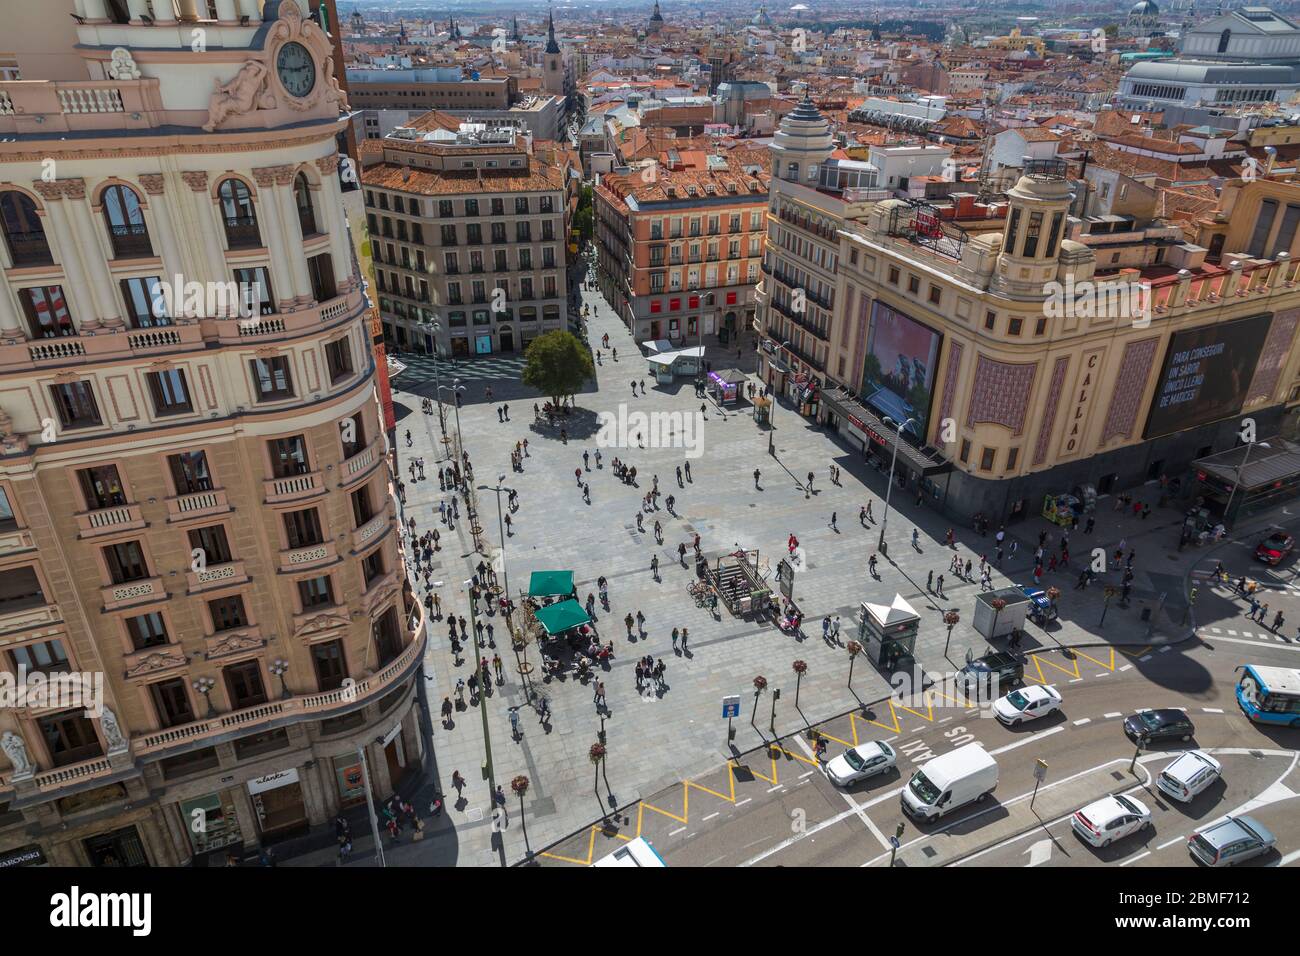 Vue de la Plaza del Callao, Madrid, Espagne, Europe Banque D'Images